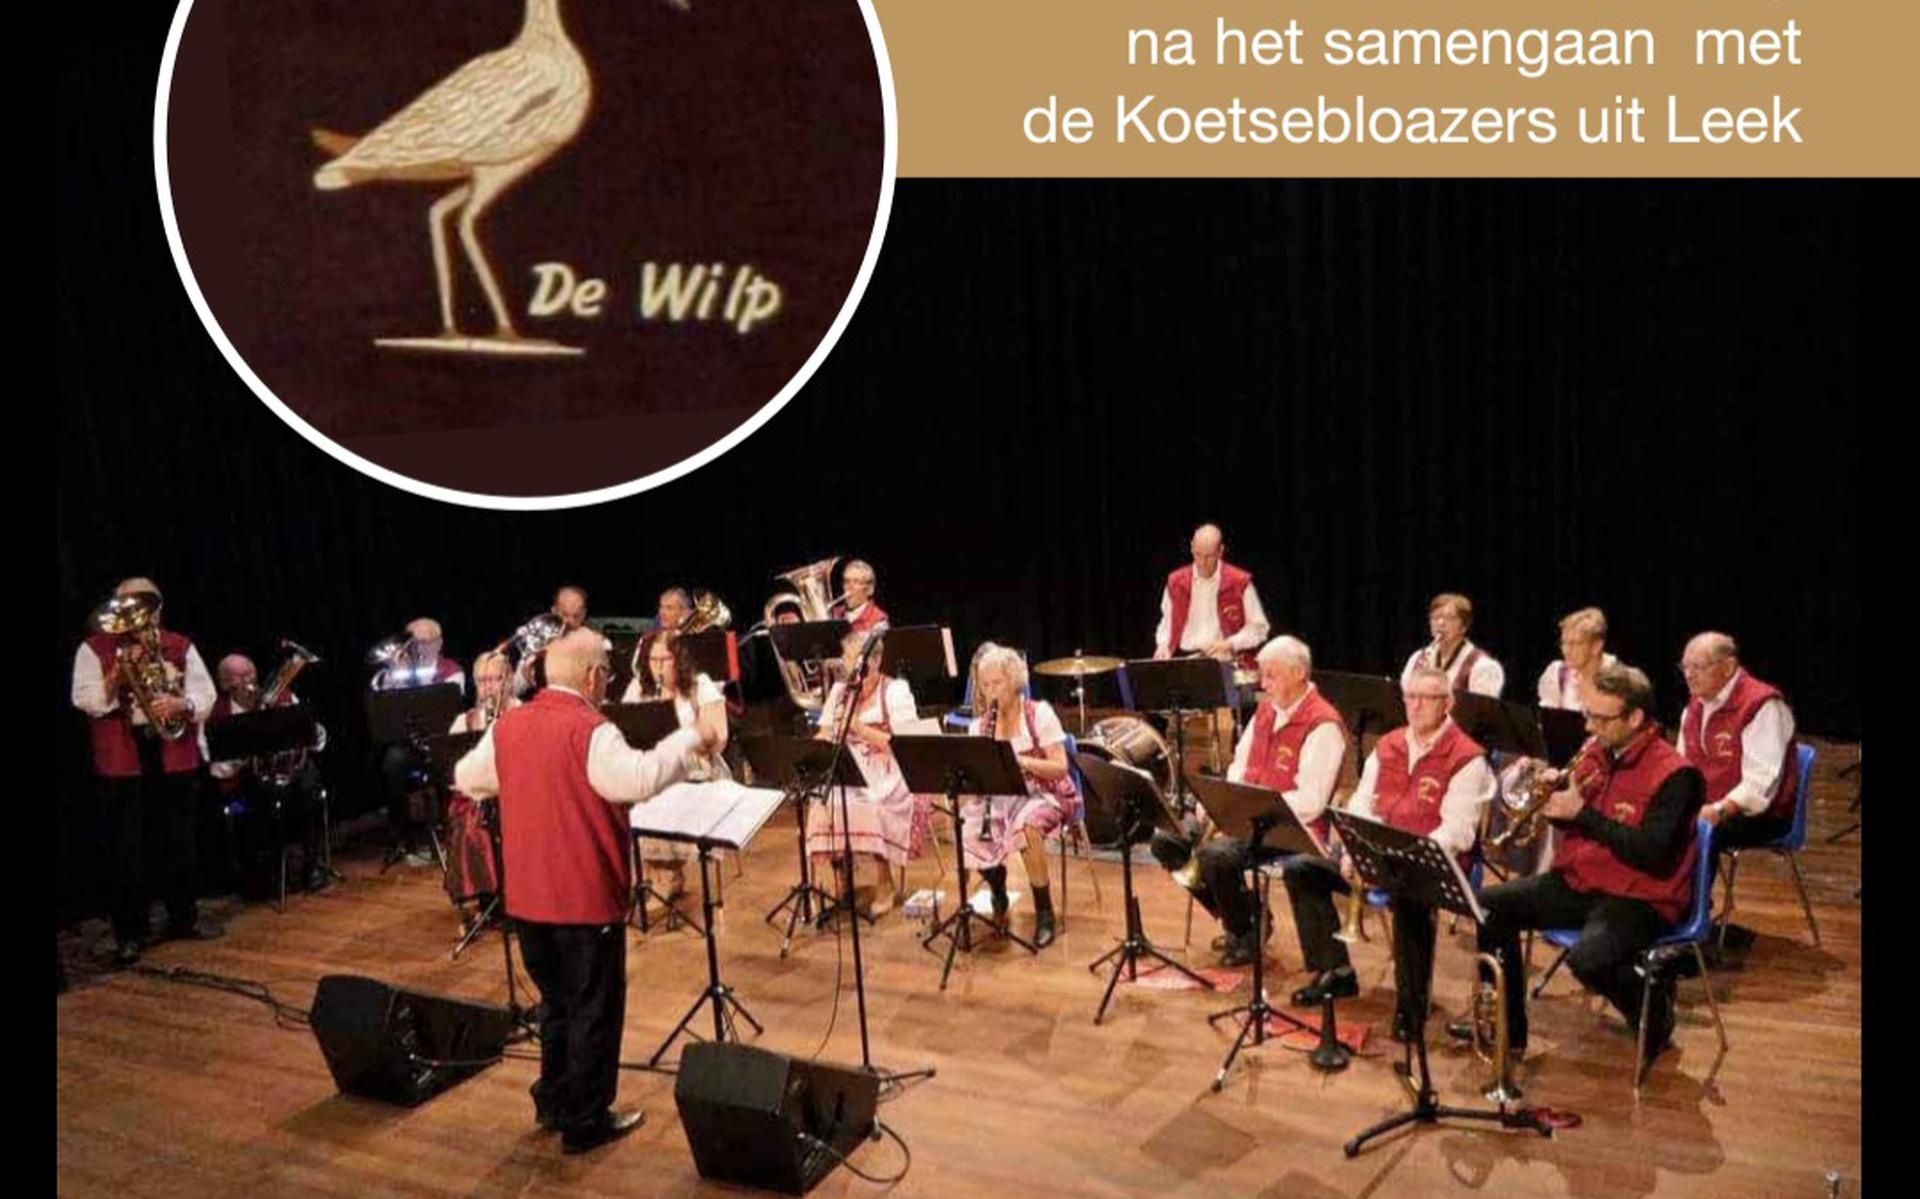 Concert in Noordwijk.